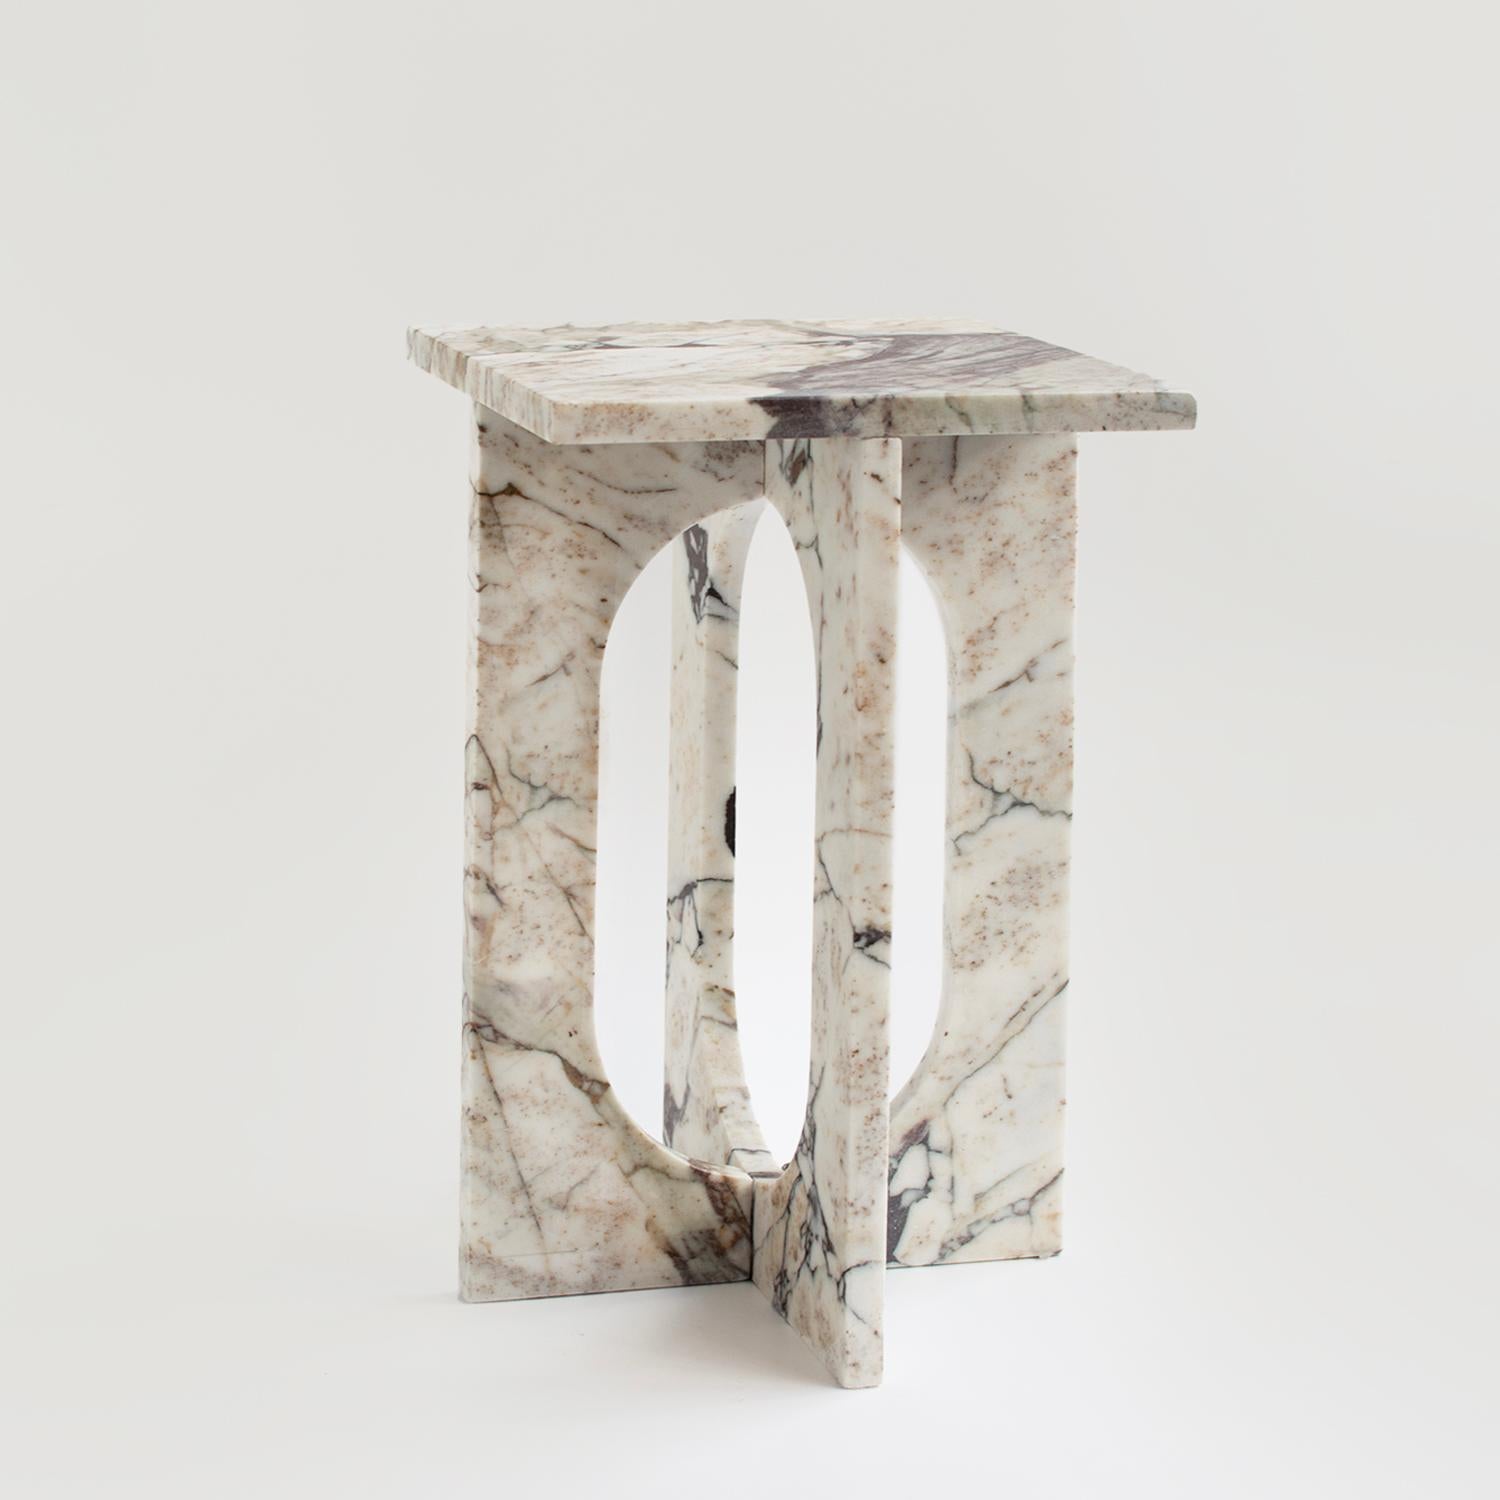 Table d'appoint BOND en marbre Calacatta -  La table d'appoint Bond évoque la simplicité avec son design moderne et épuré. Fabriquée en marbre adouci, cette pièce constitue un ajout élégant à tout espace grâce à ses lignes sophistiquées et épurées